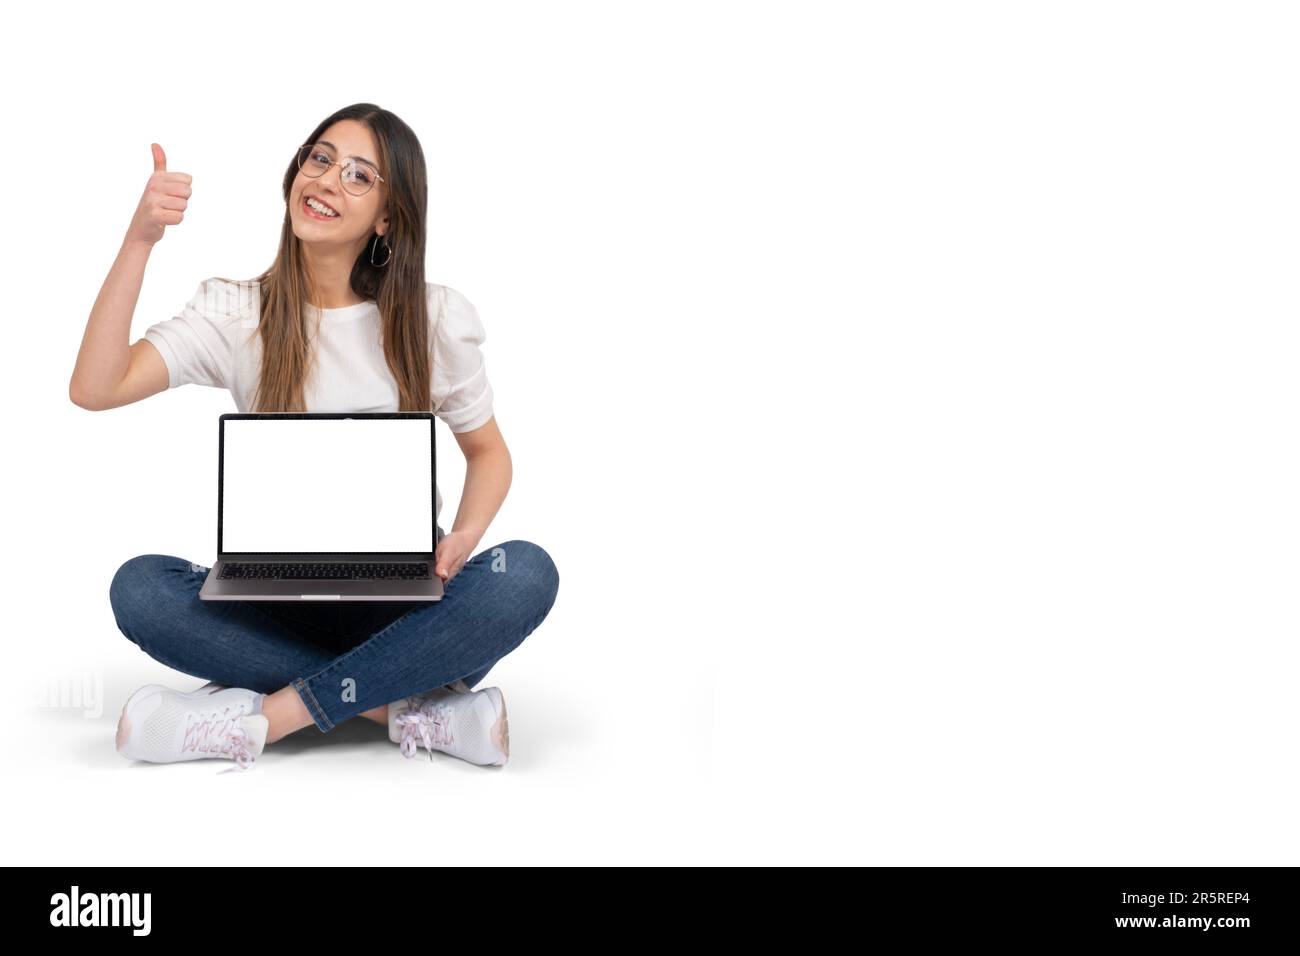 Joyeuse fille brunette caucasienne tenant la maquette d'ordinateur portable. Ordinateur portable moderne à écran blanc vide. Sourire, pouces levés, recommander le site Web. Banque D'Images